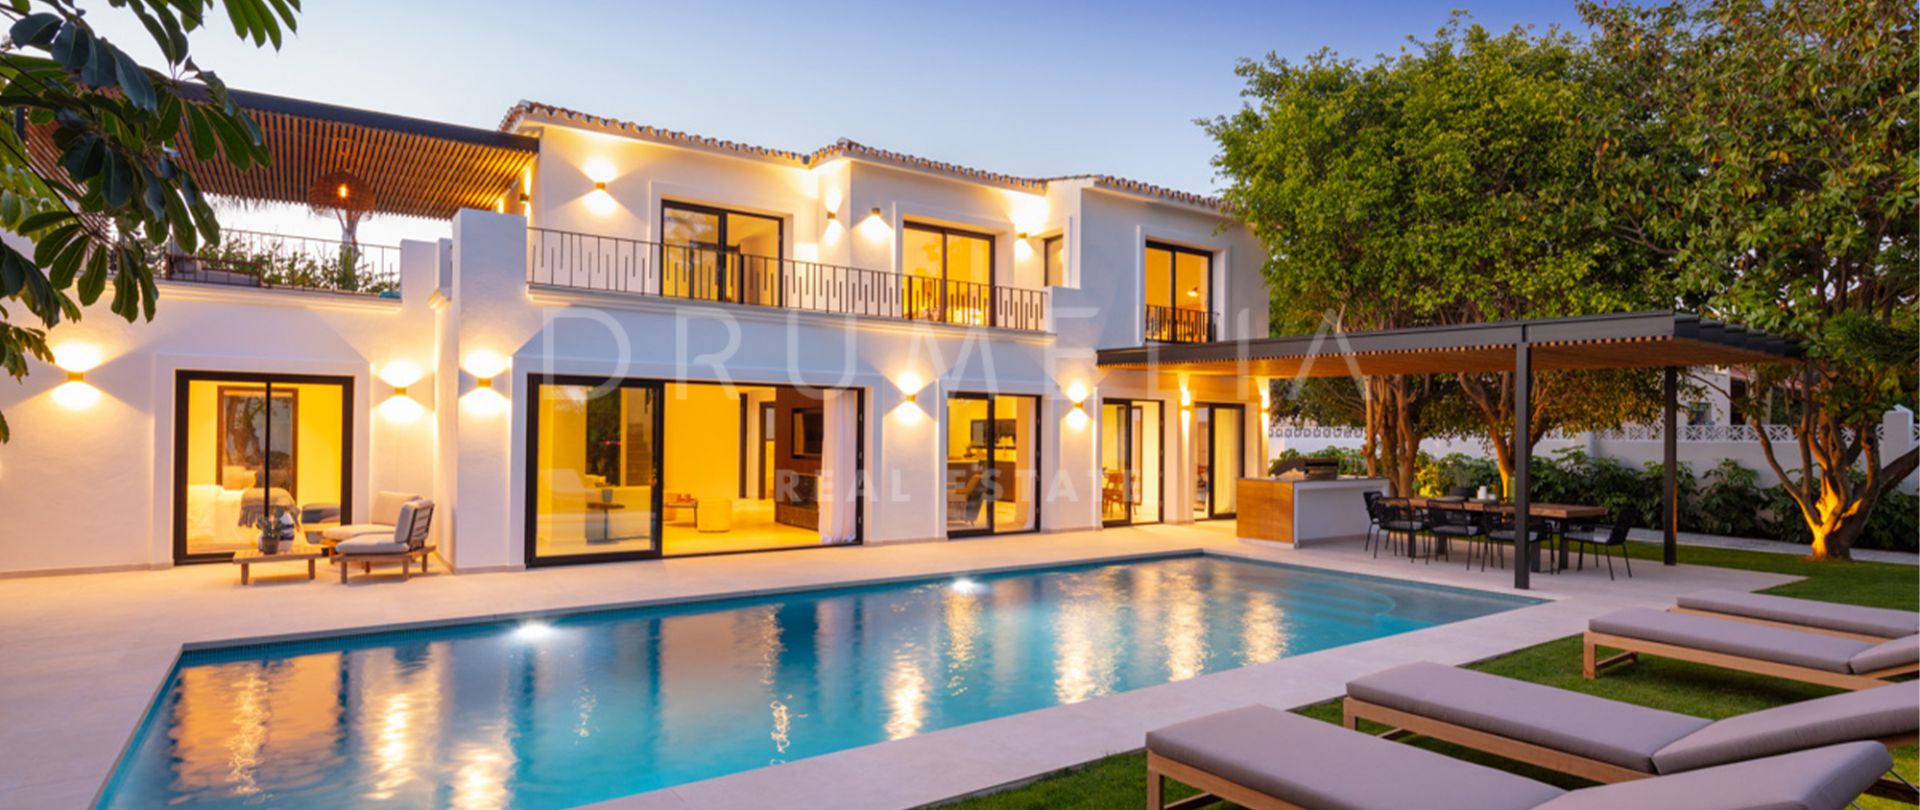 Villa for salg i Marbella - Puerto Banus, Marbella (Alle)